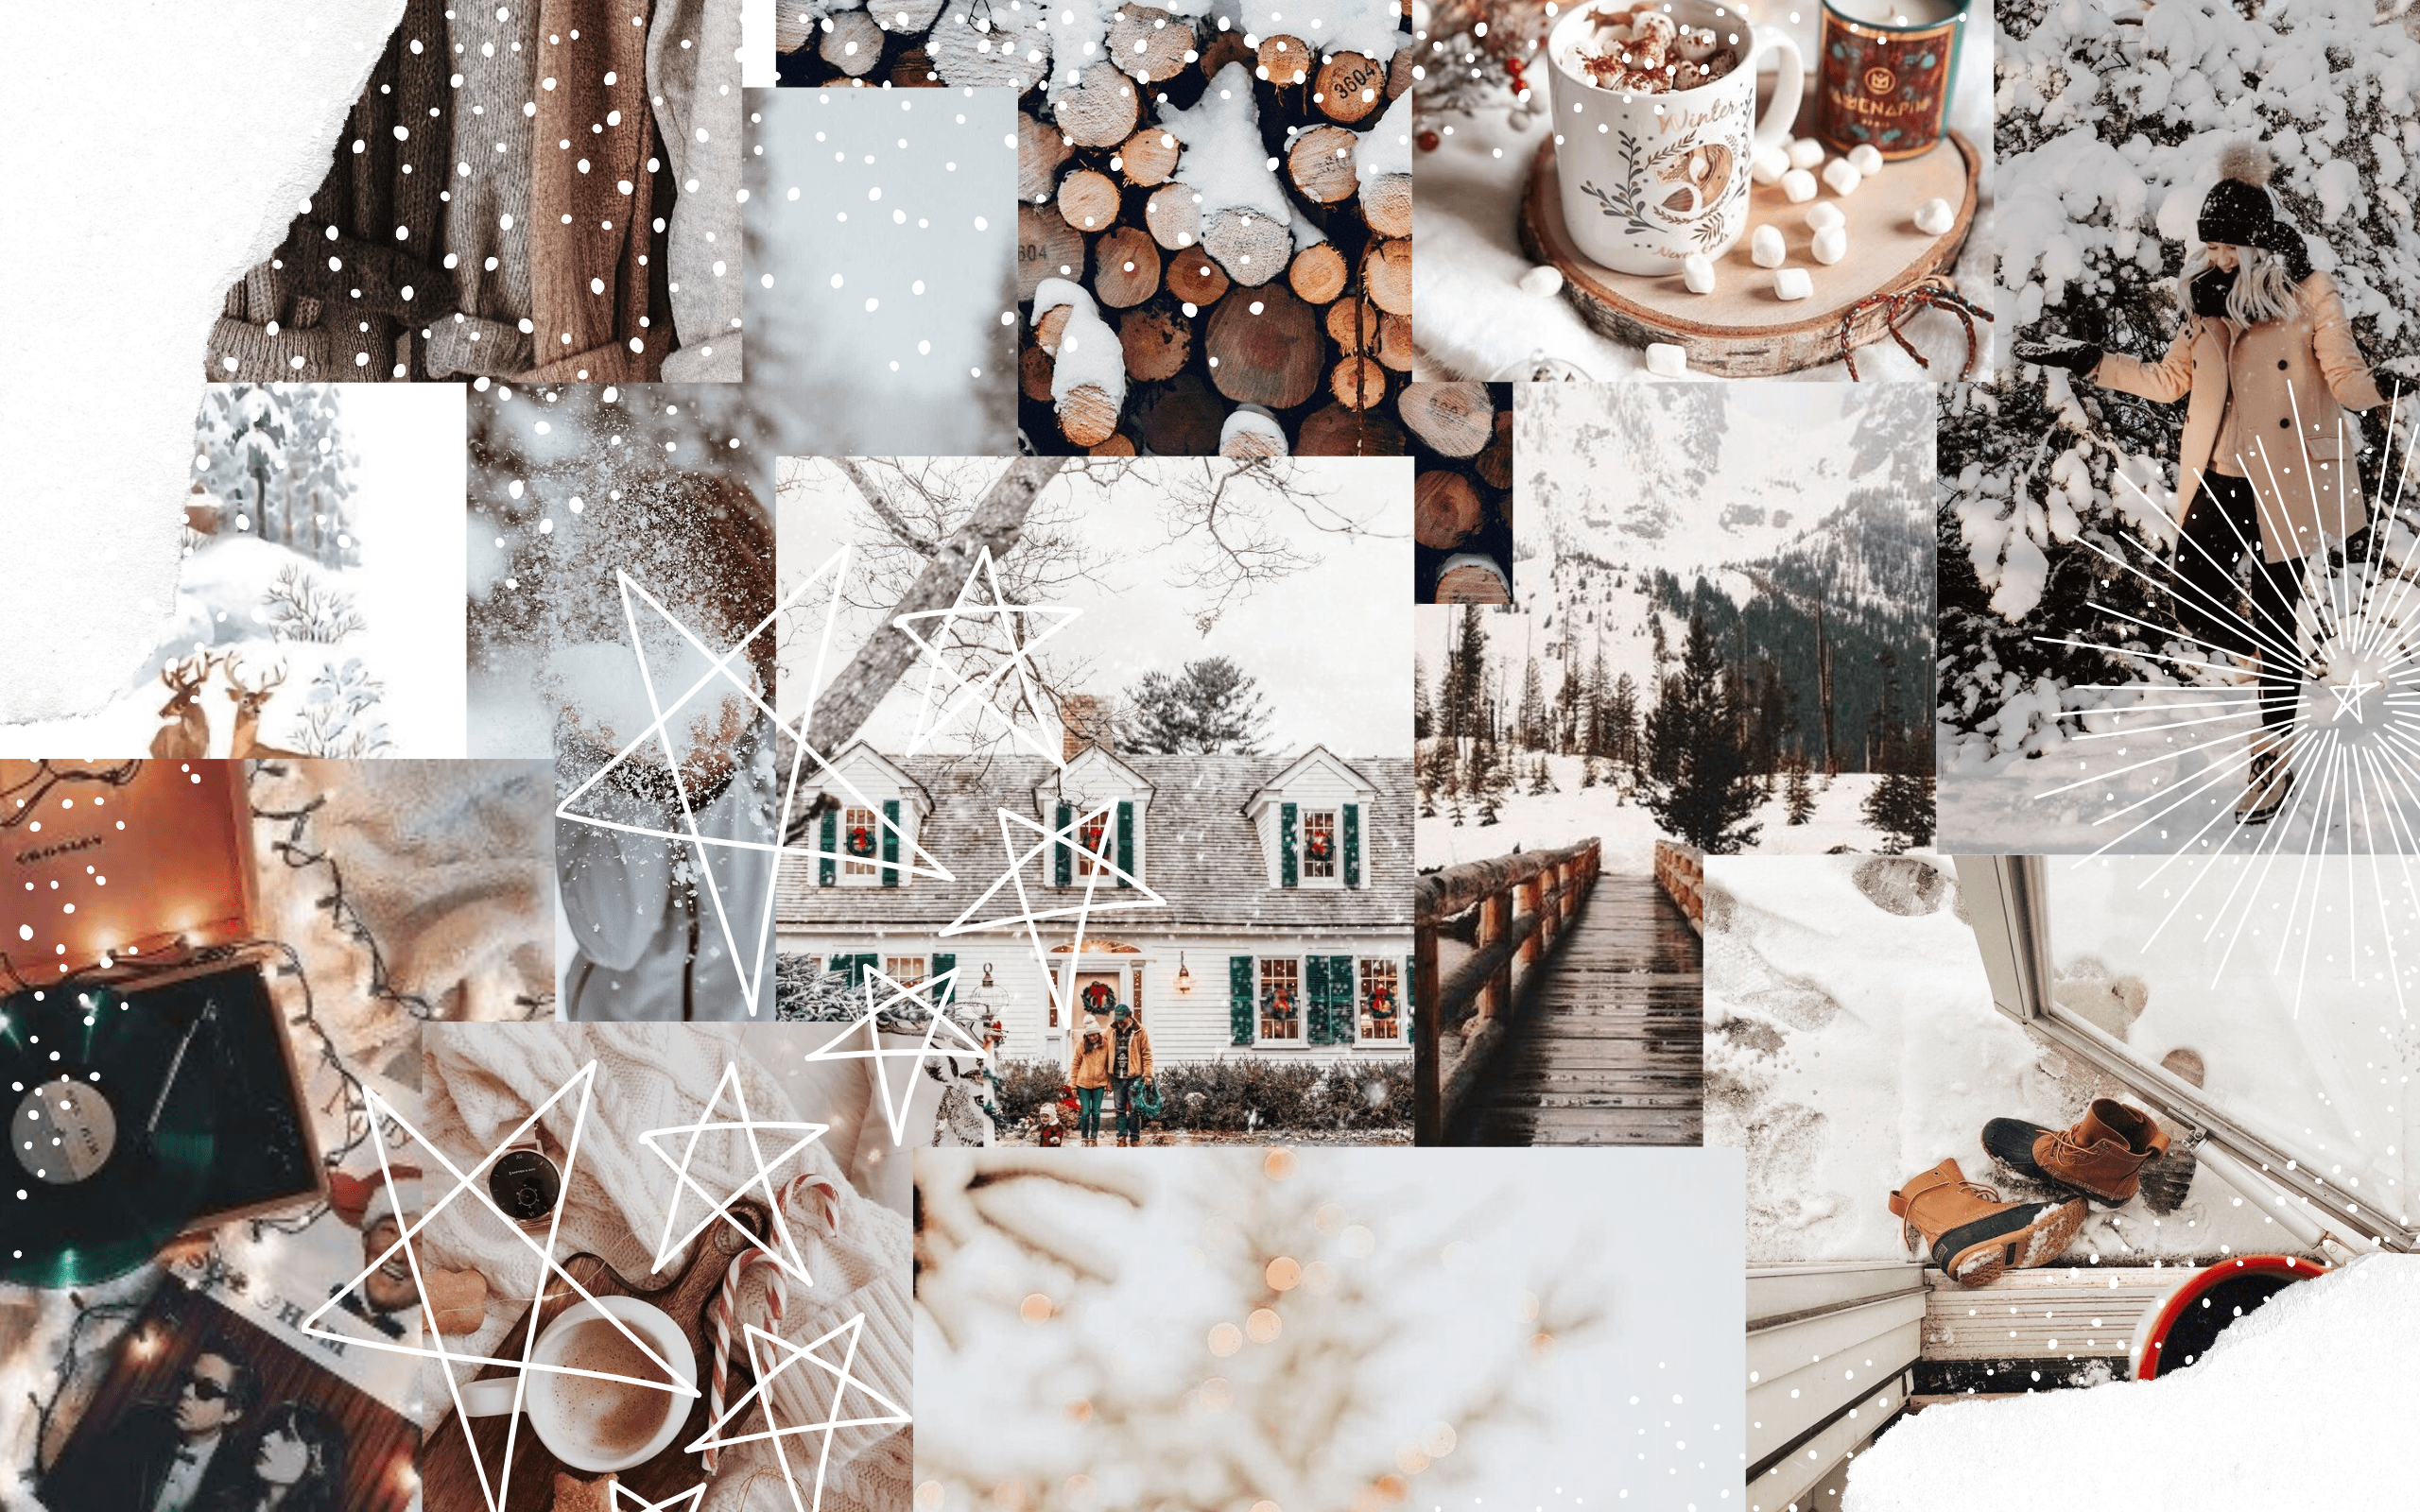 Mỹ thuật mùa đông: Những tác phẩm mỹ thuật mùa đông với những gam màu trầm ấm sẽ đem lại cho bạn cảm giác yên bình và thư thái. Cùng thưởng thức những tác phẩm nghệ thuật ấn tượng của mùa đông này trong bức ảnh.